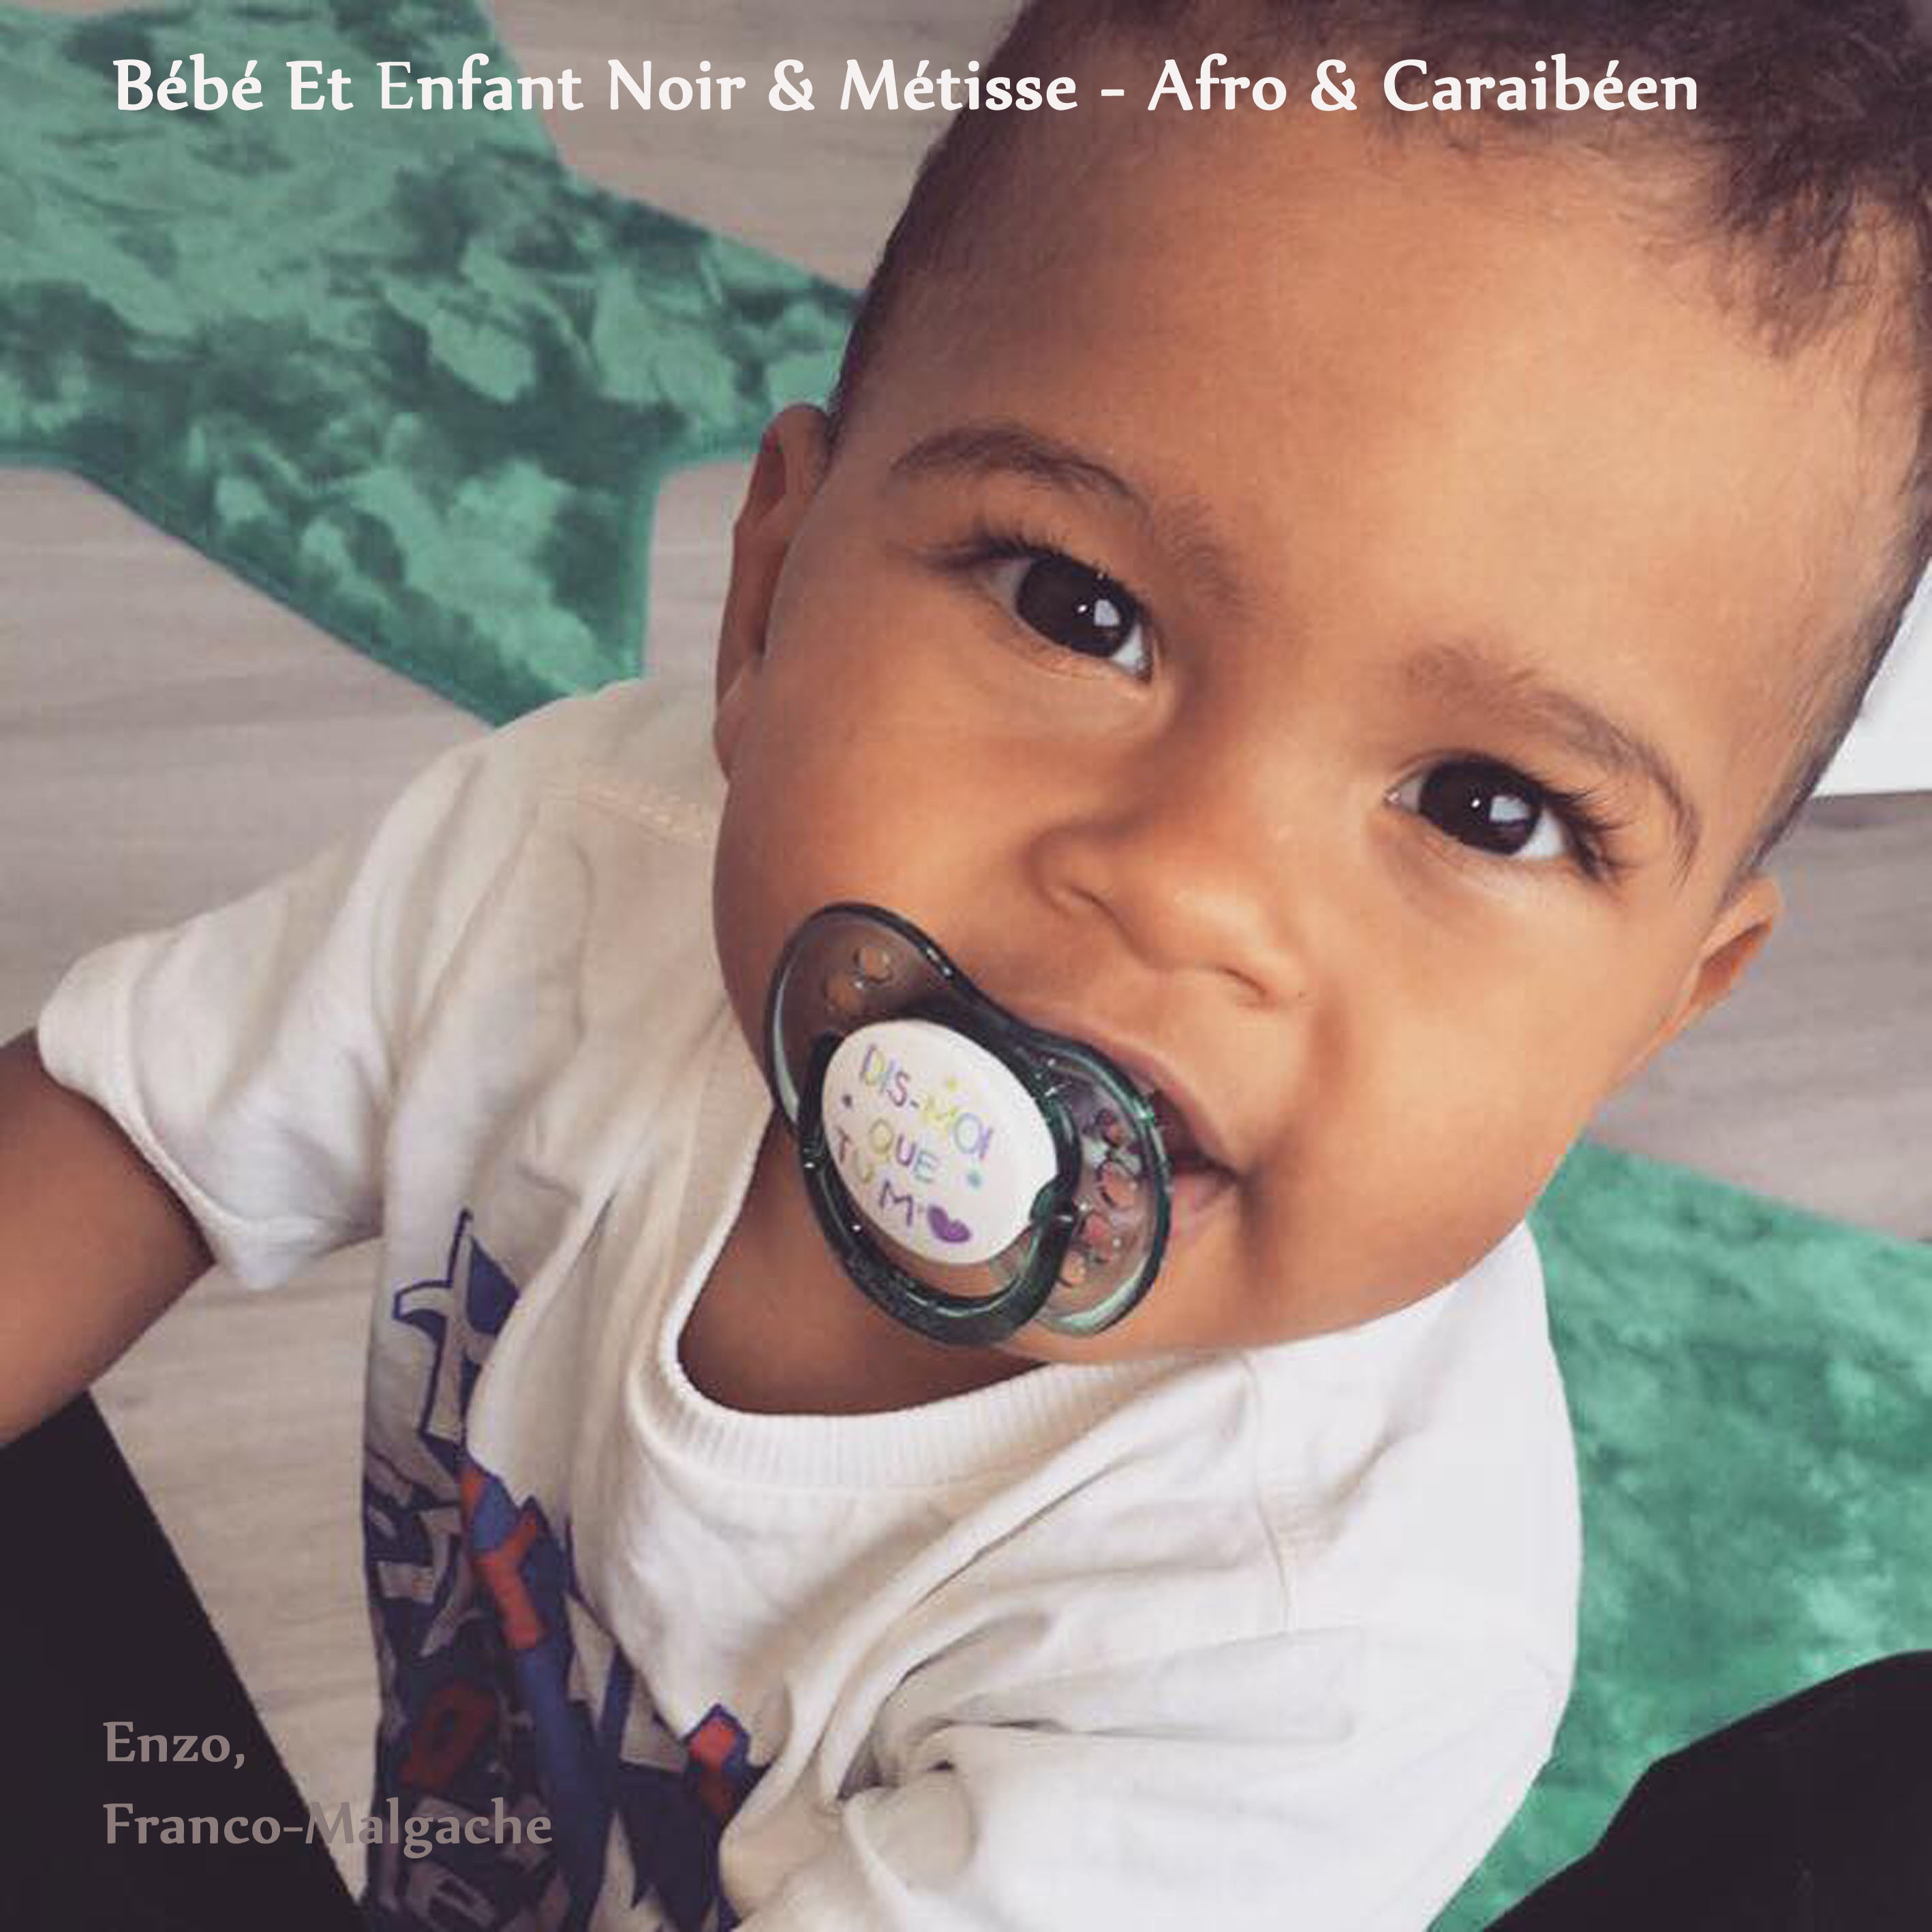 Les Kids Novembre Bebe Et Enfant Noir Metisse Afro Caraibeen